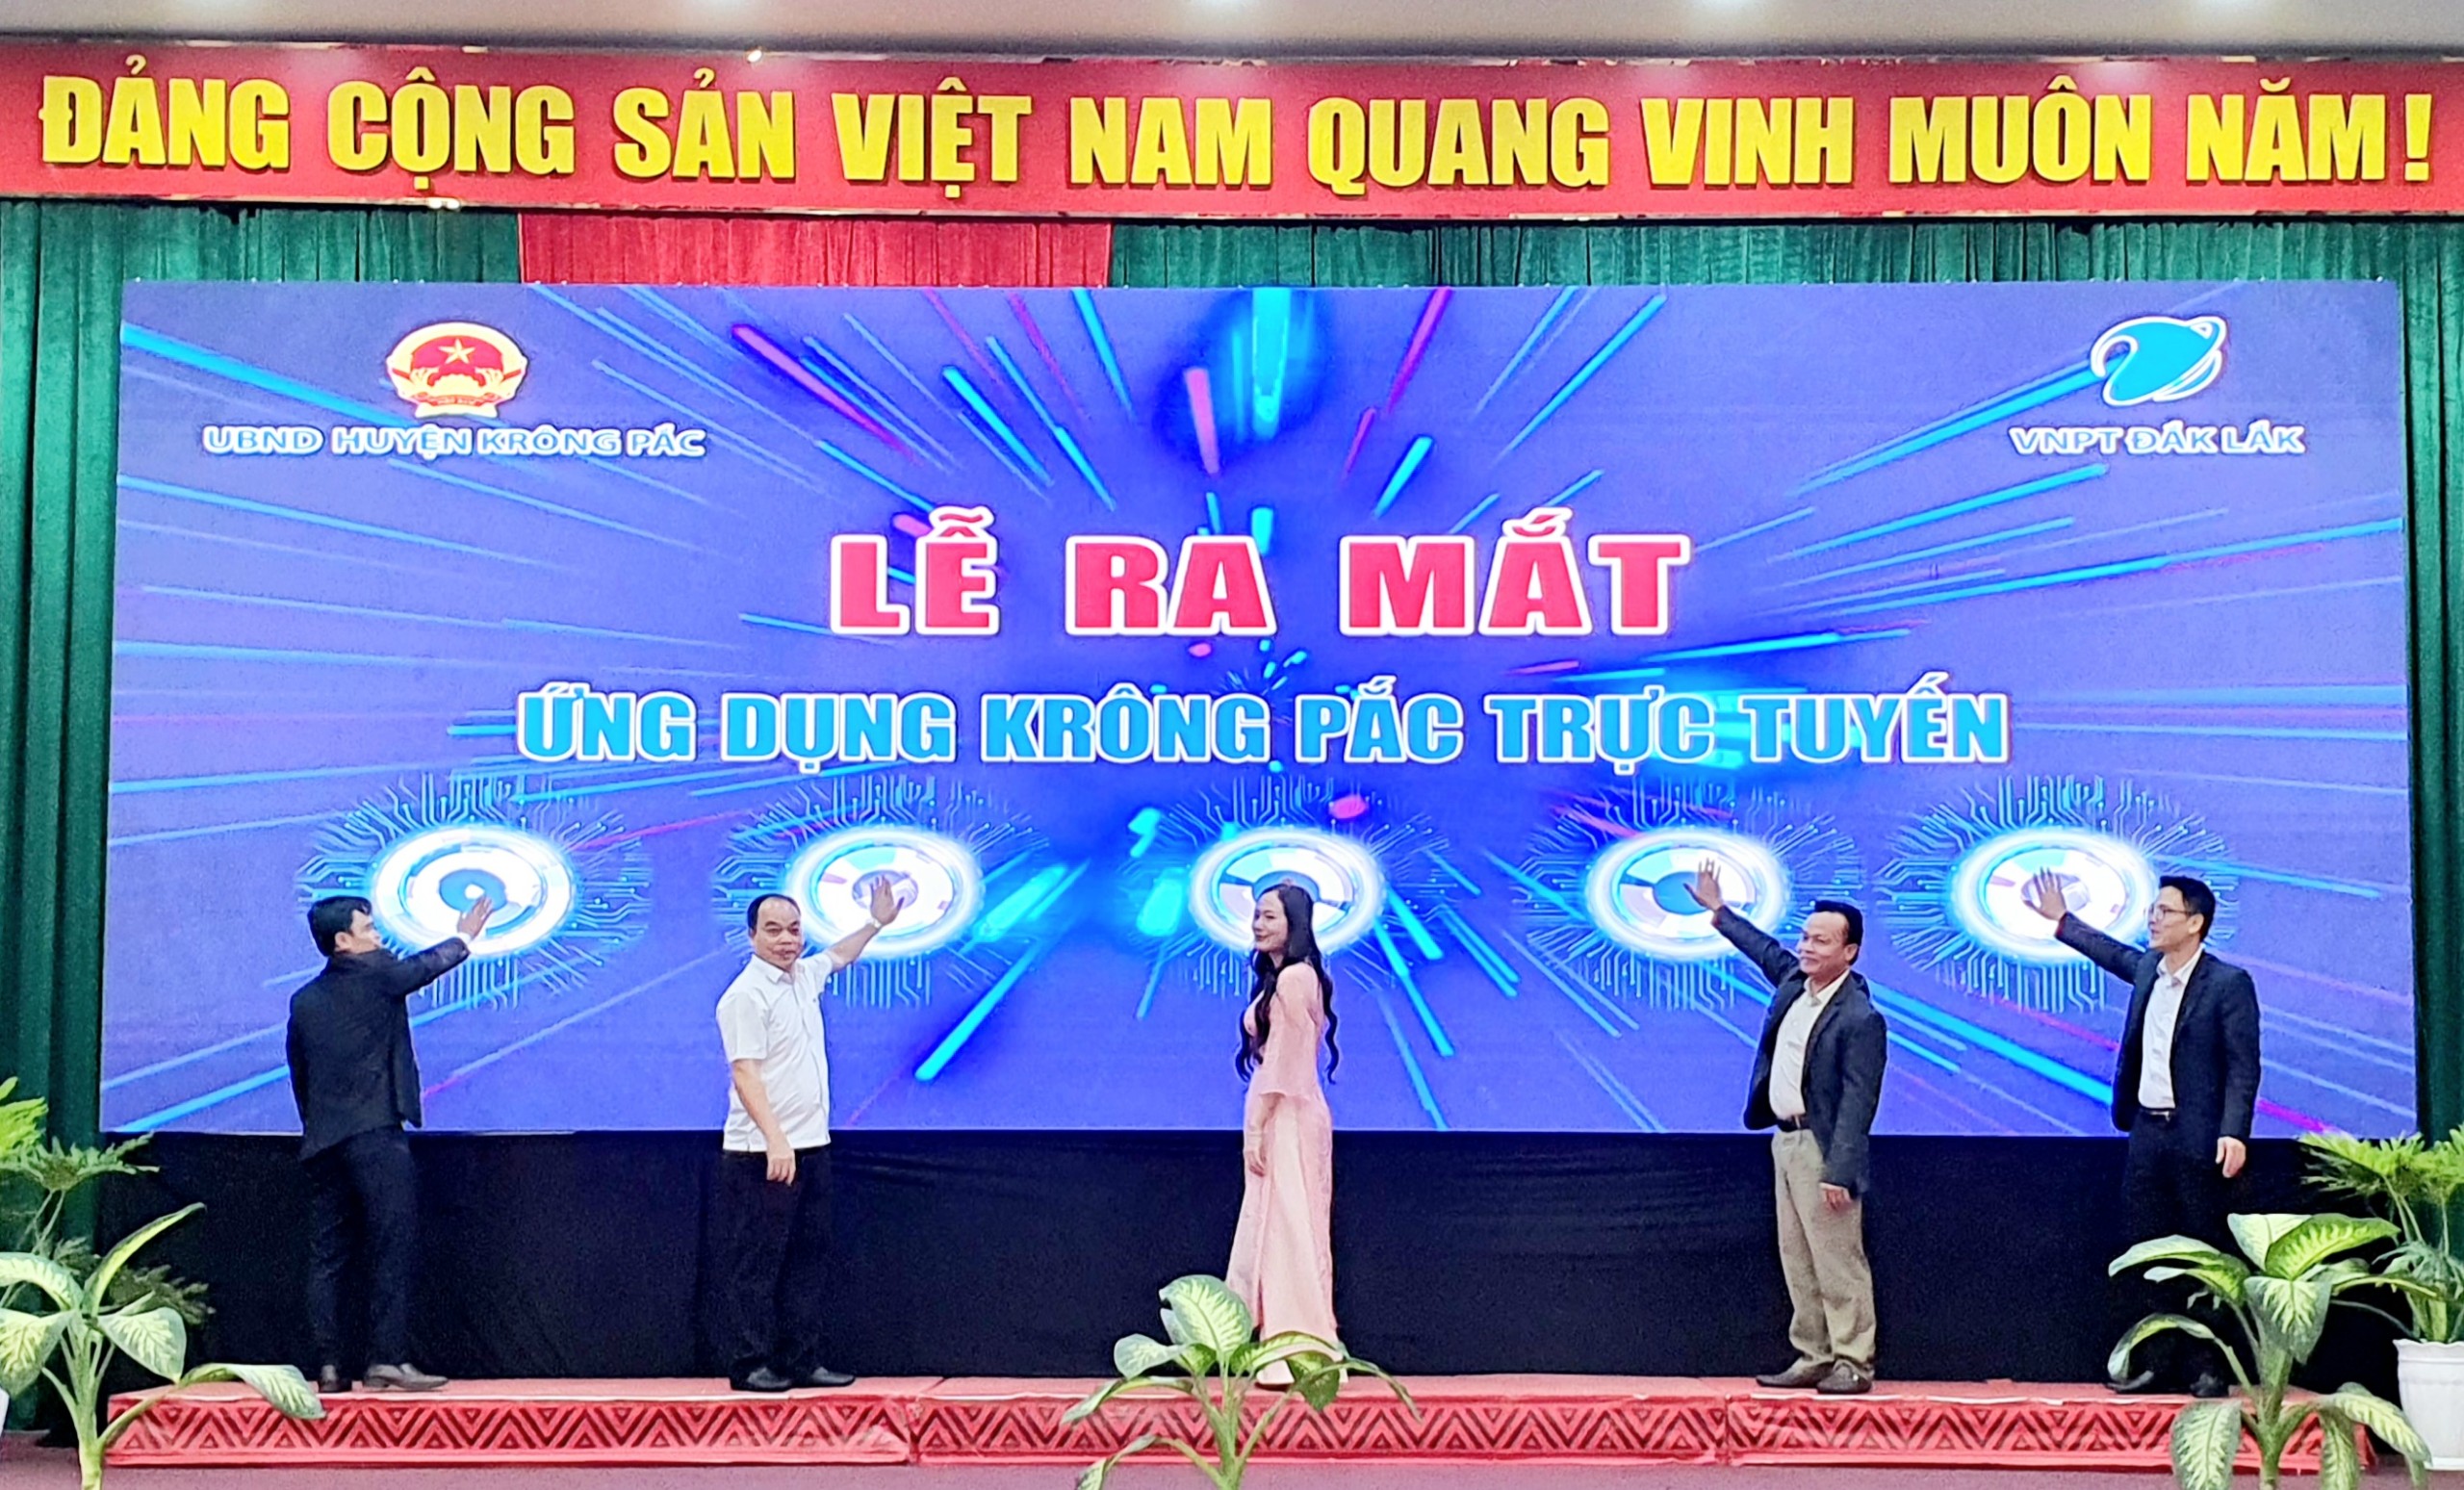 Huyện Krông Pắc tổng kết công tác cải cách hành chính và ra mắt ứng dụng trực tuyến